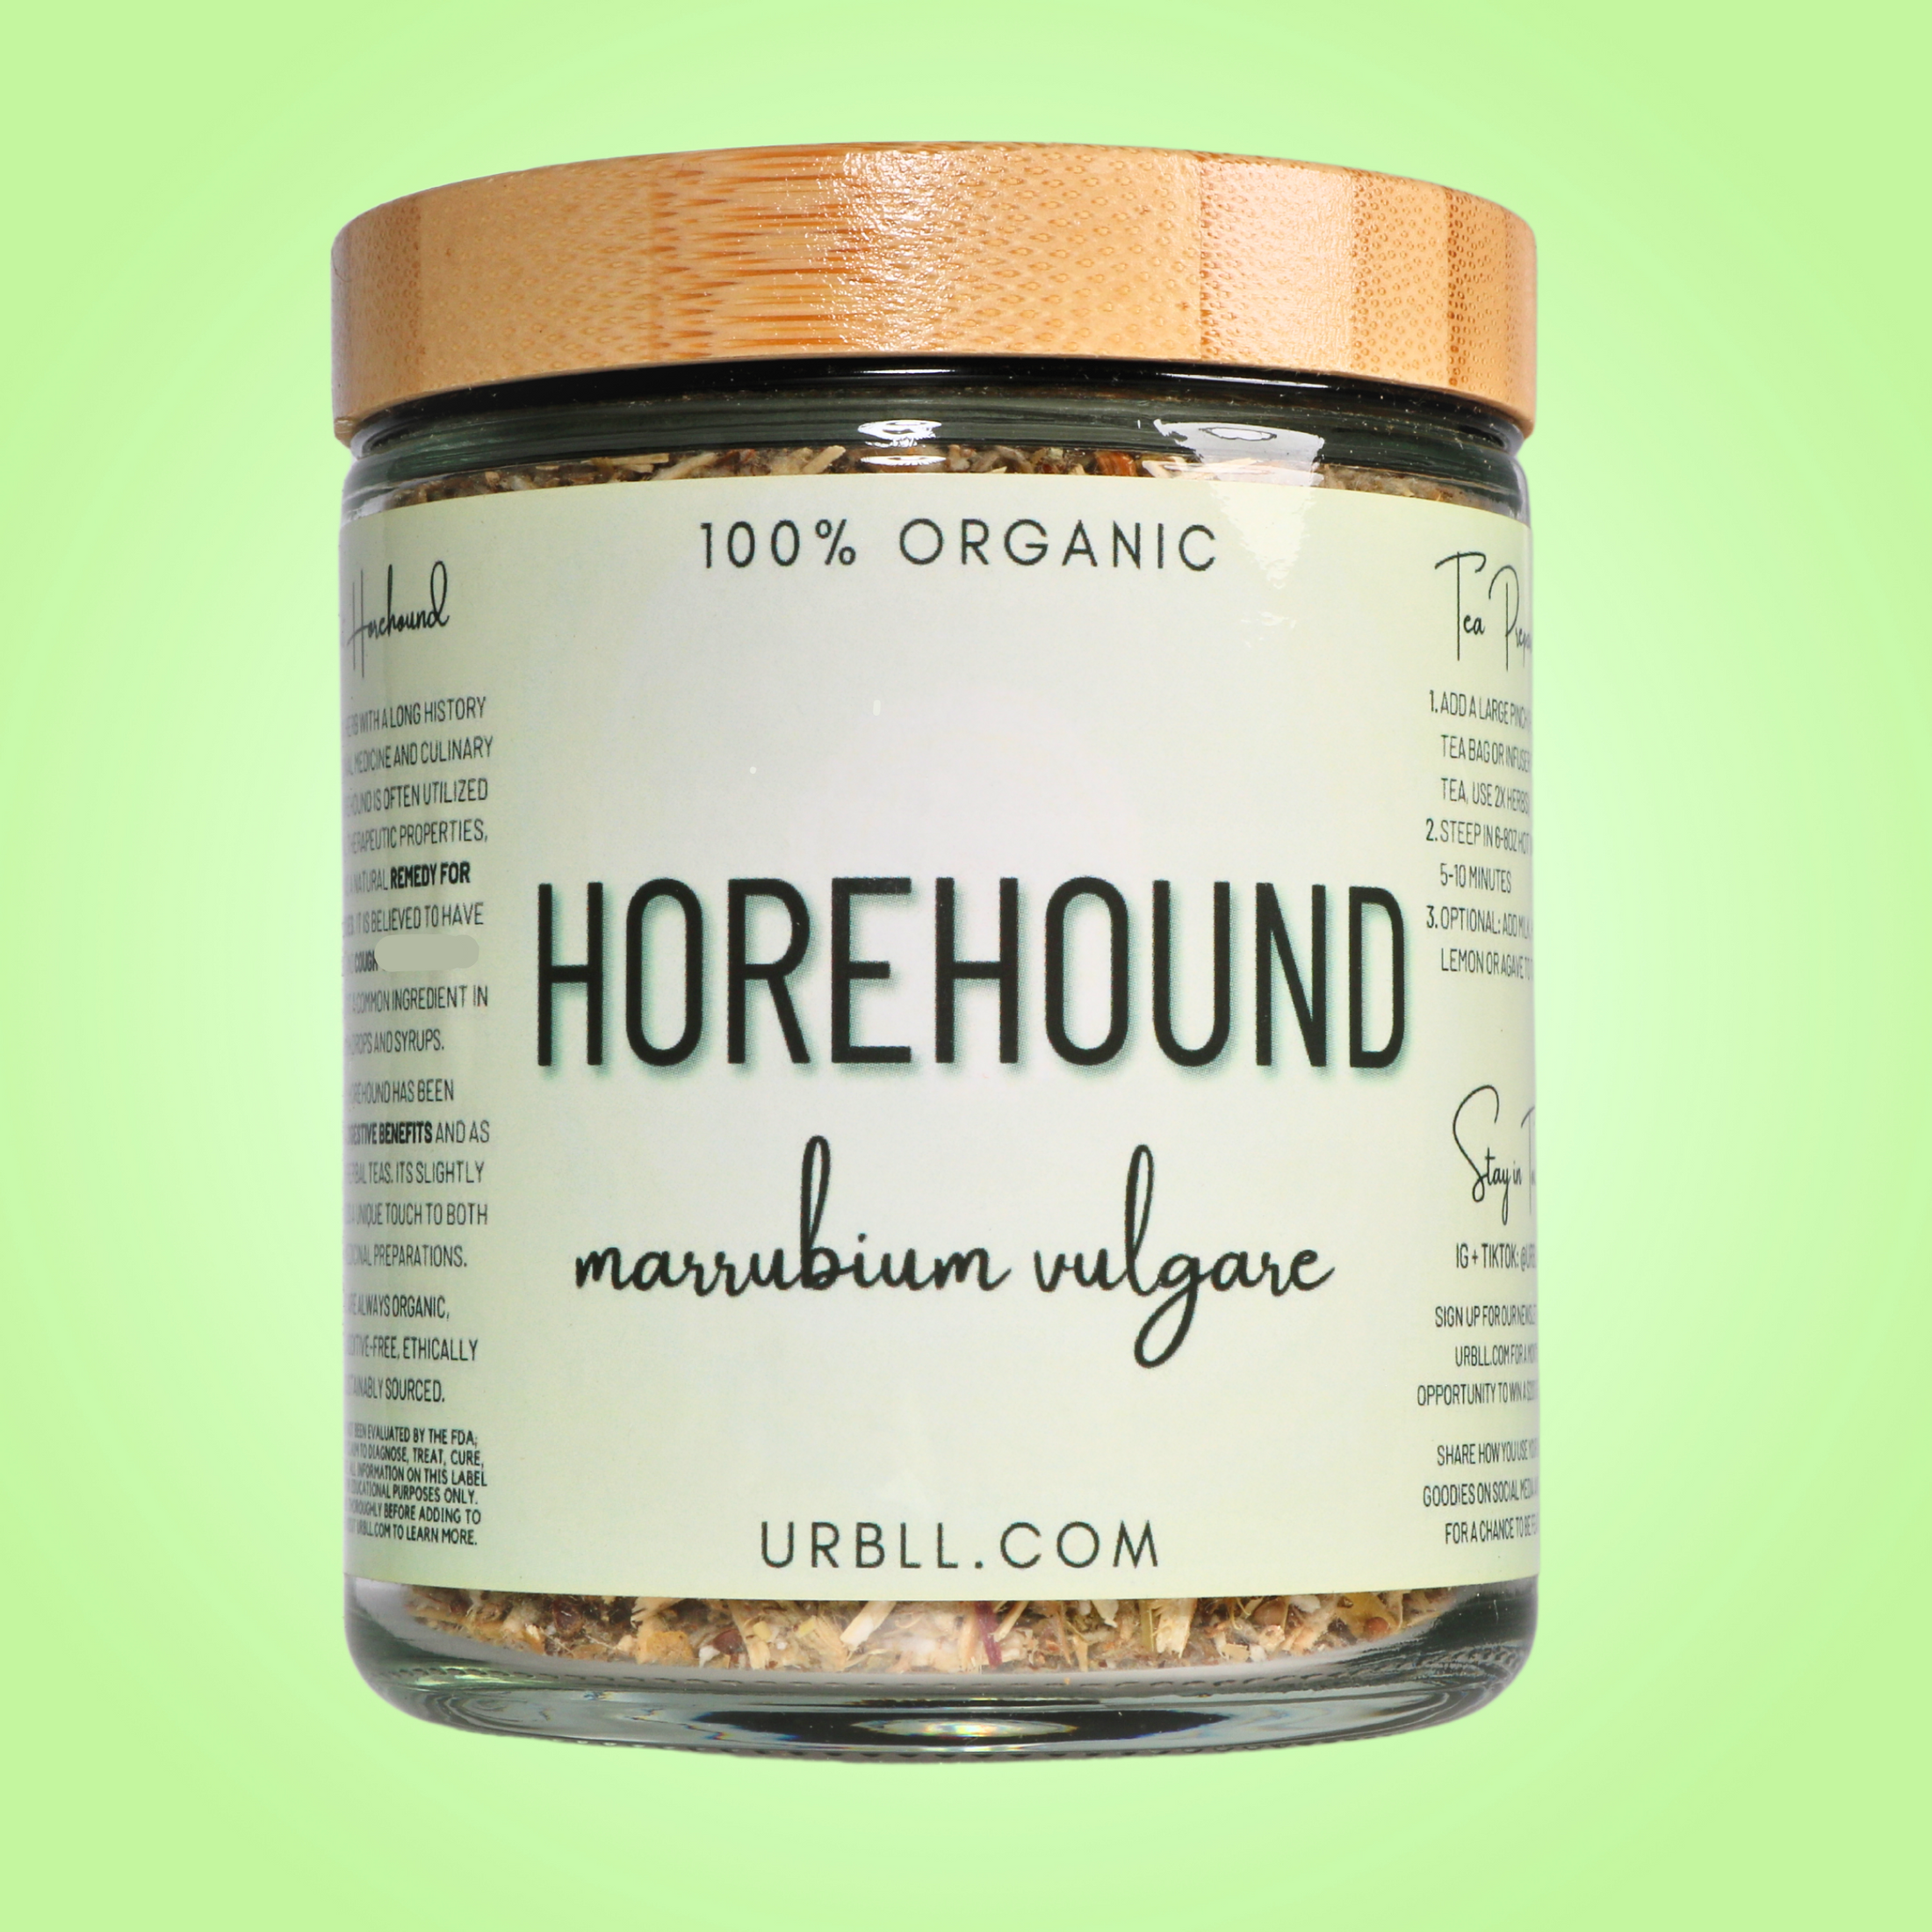 Horehound - Organic